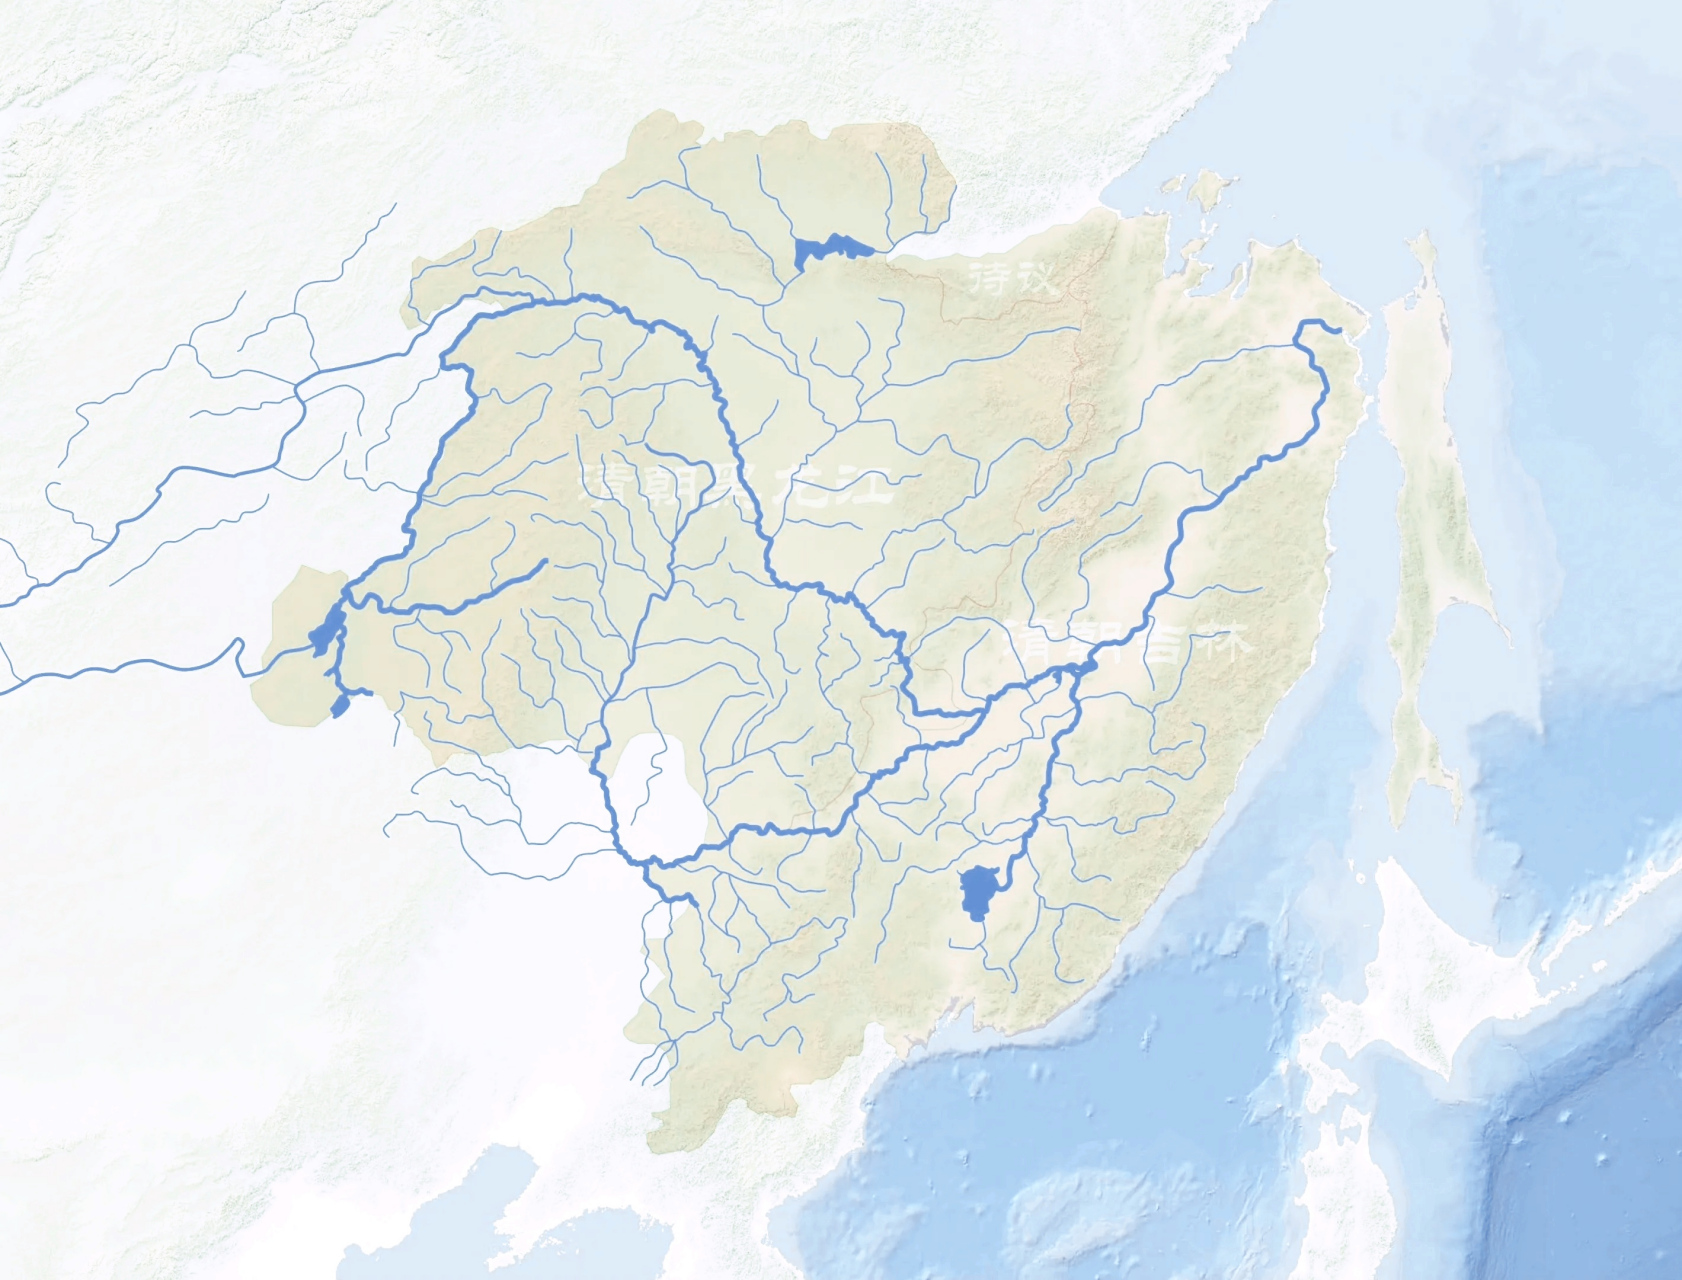 黑龙江流域图高清版图片